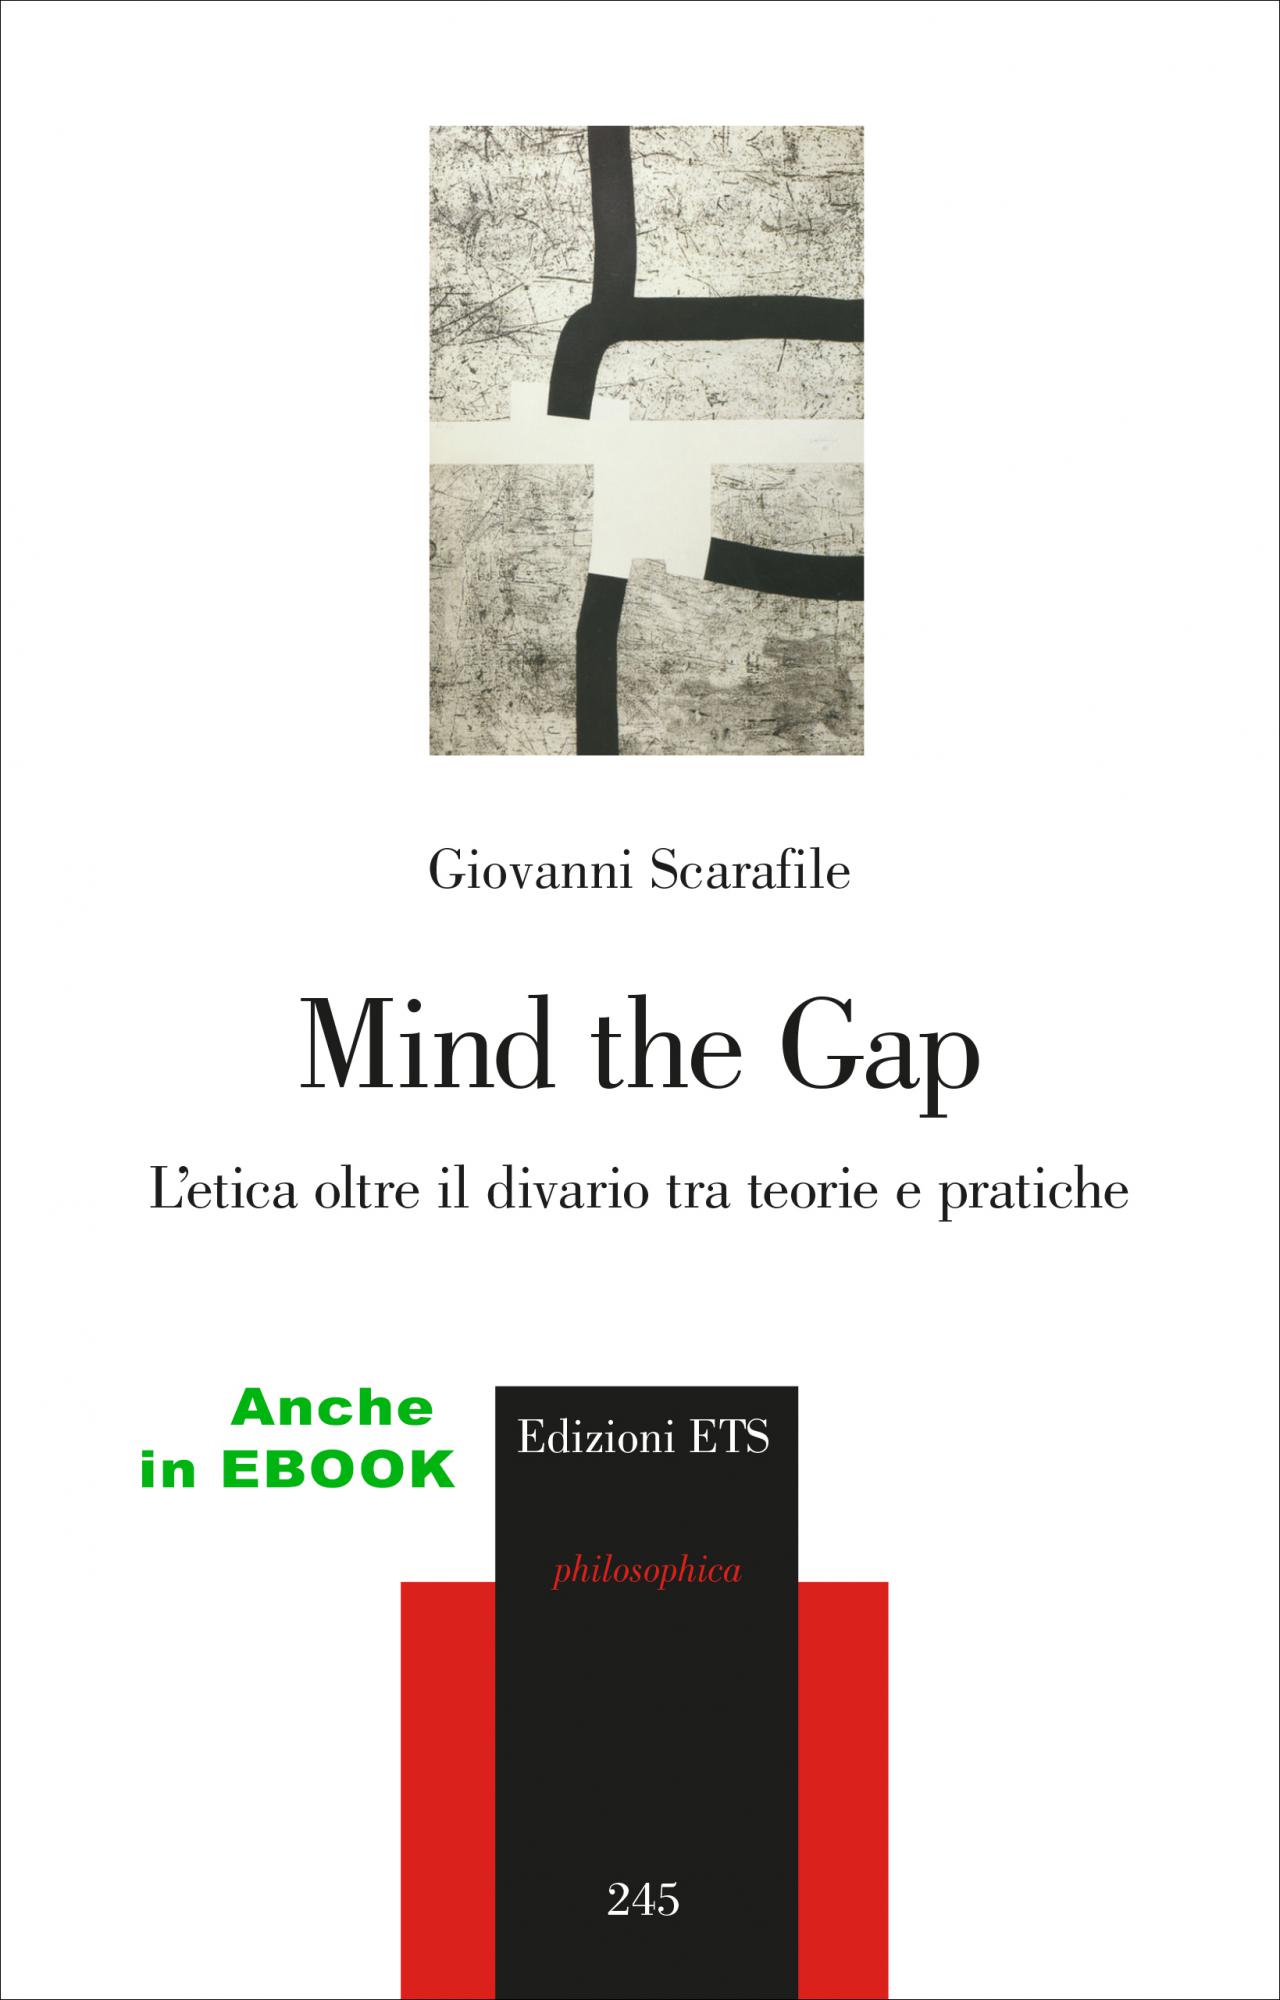 Mind the Gap.L’etica oltre il divario tra teorie e pratiche